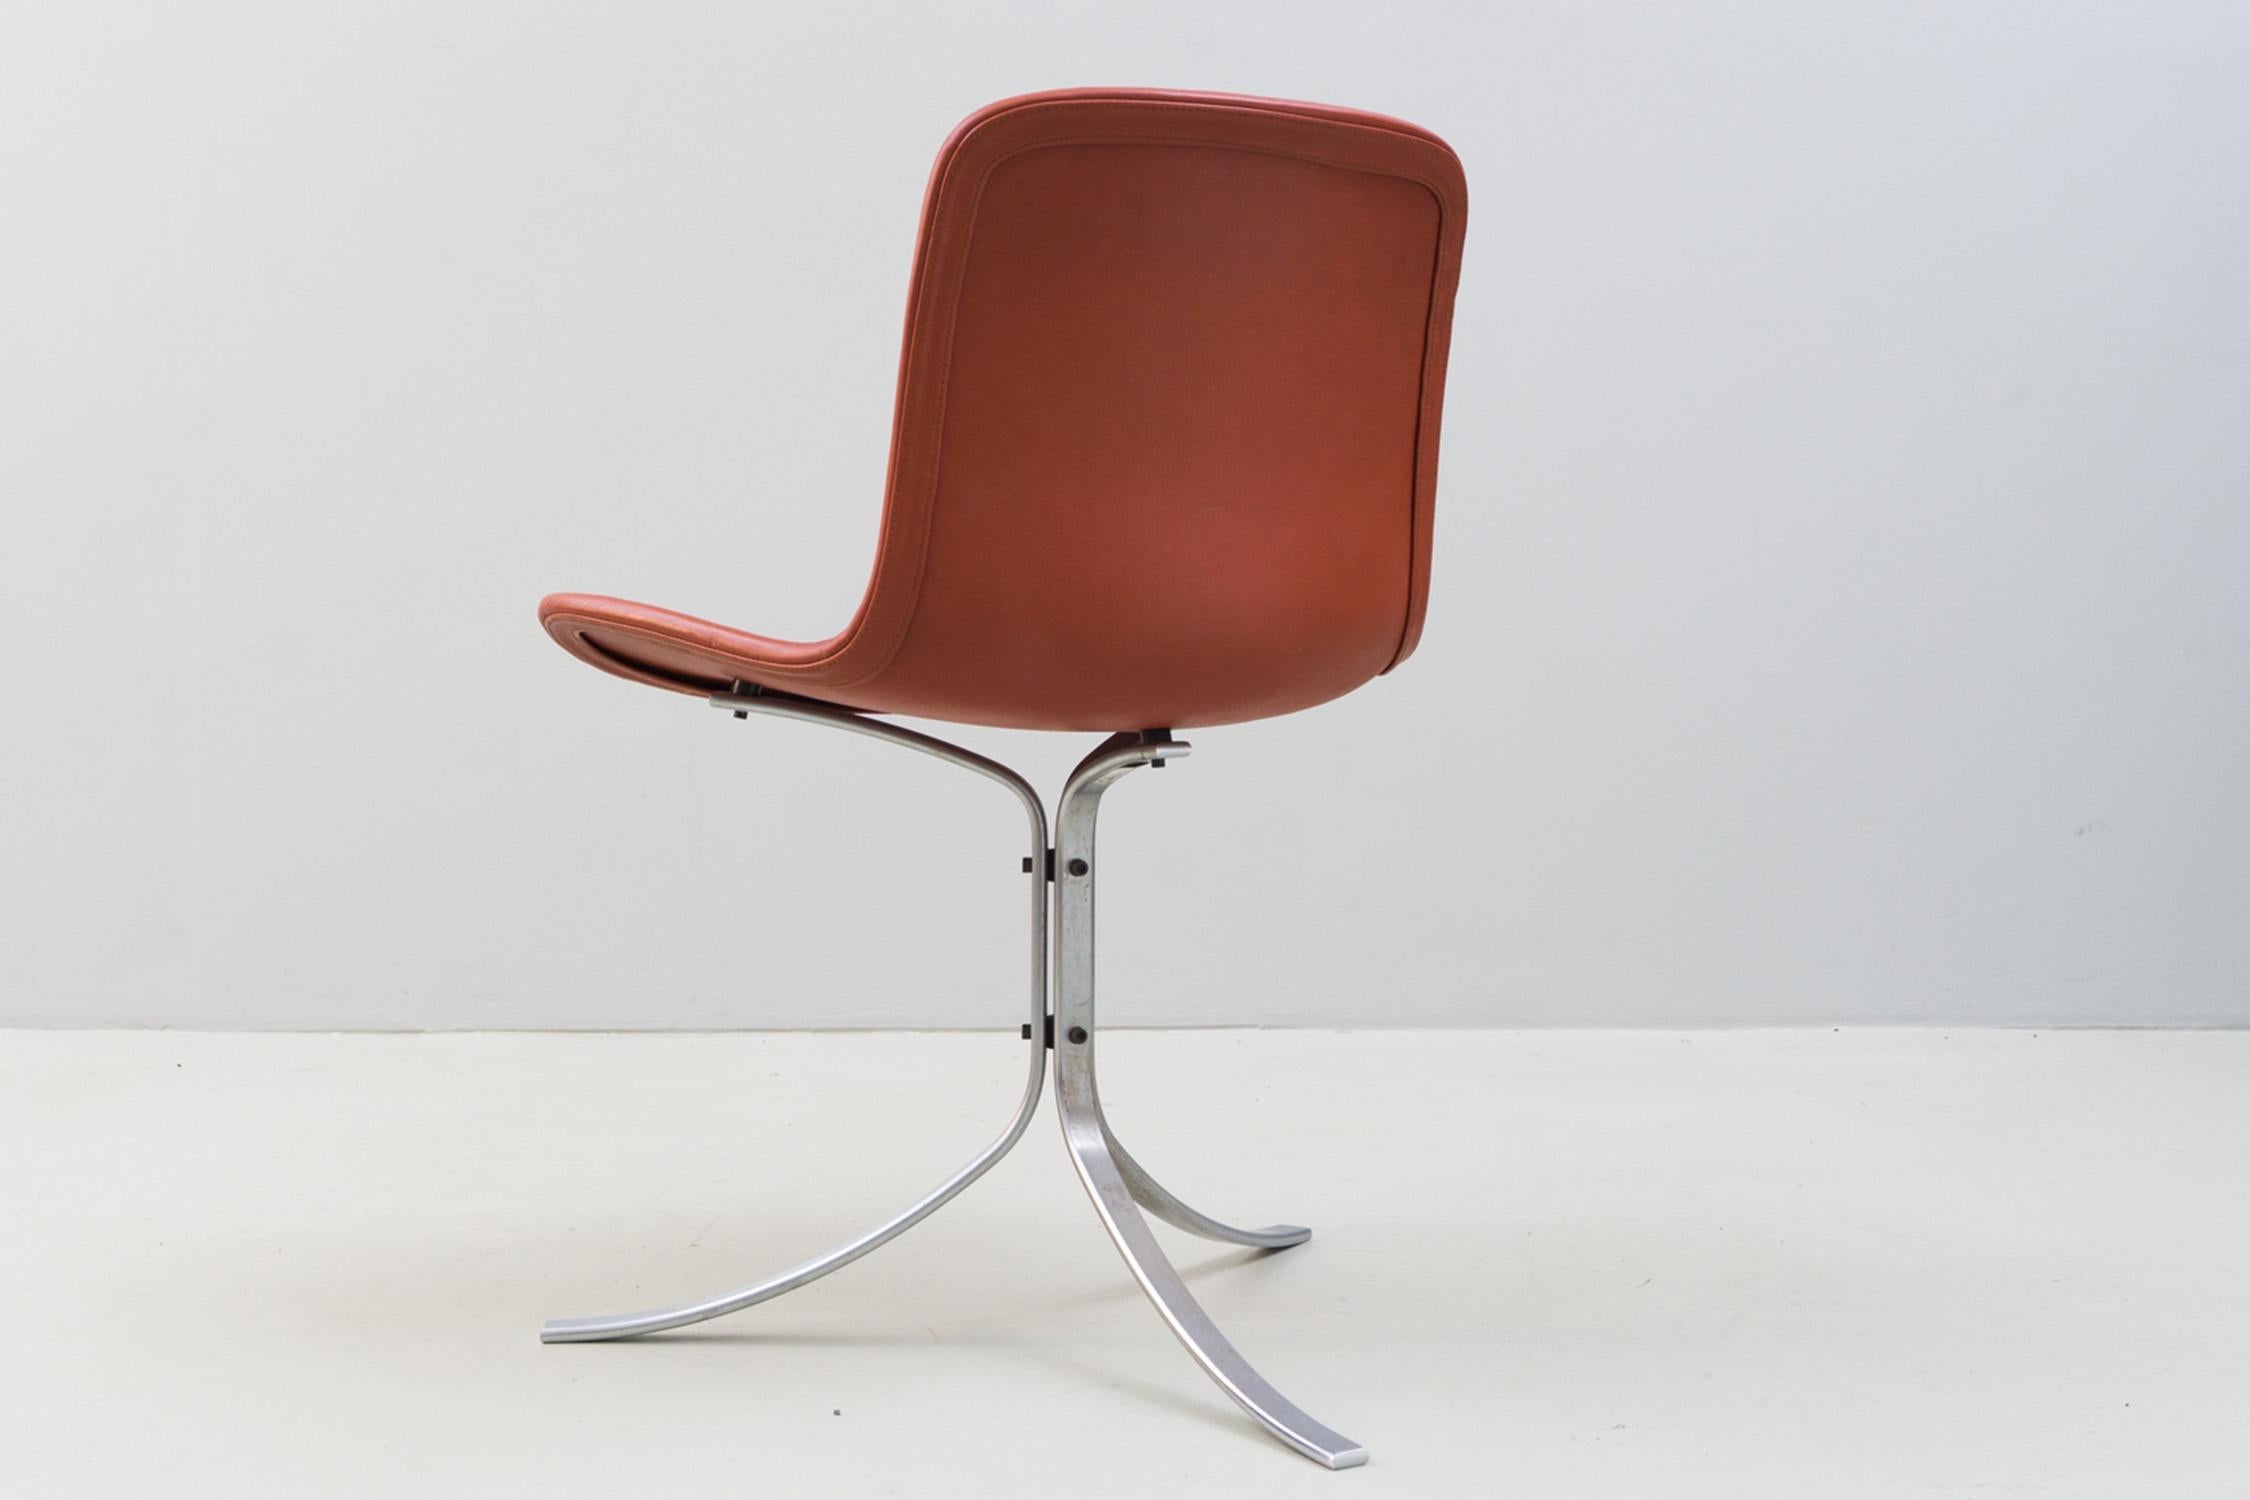 Italian Chair 'PK 9' by Poul Kjaerholm, Fritz Hansen, Steel, Leather, 1960 For Sale